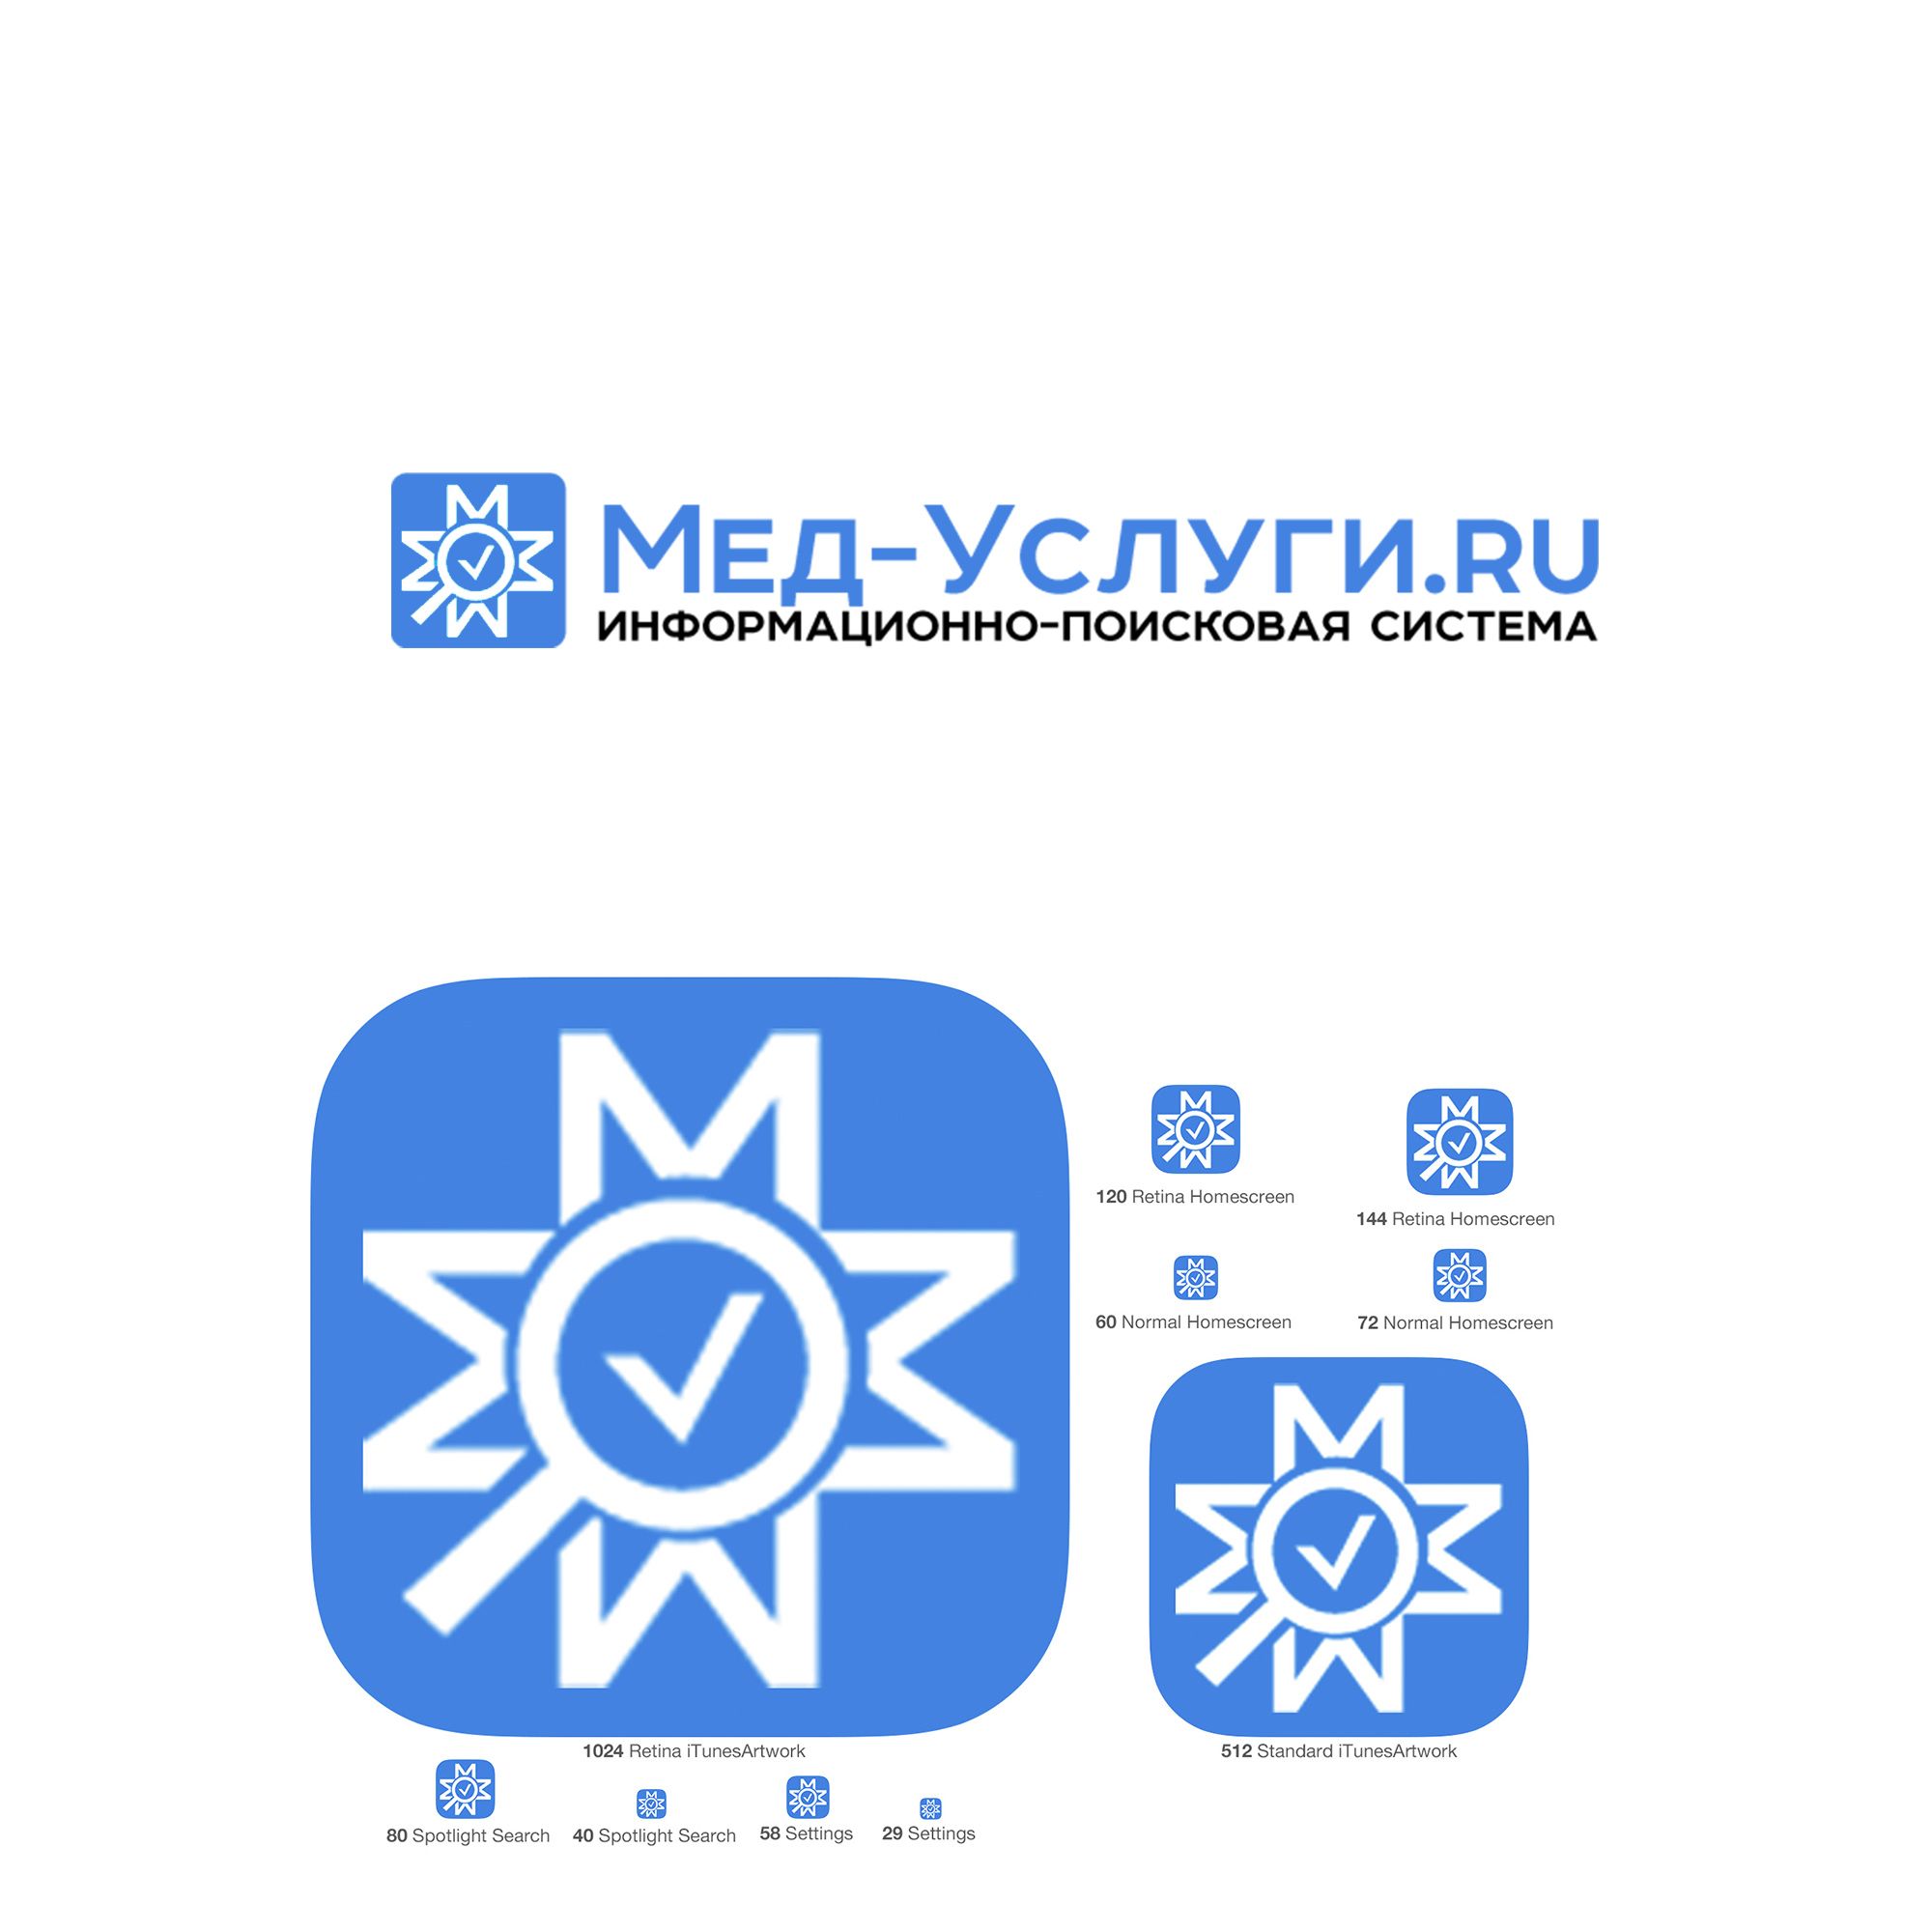 Логотип для Мед Услуги .ru  Информационно-Поисковая система - дизайнер SmolinDenis